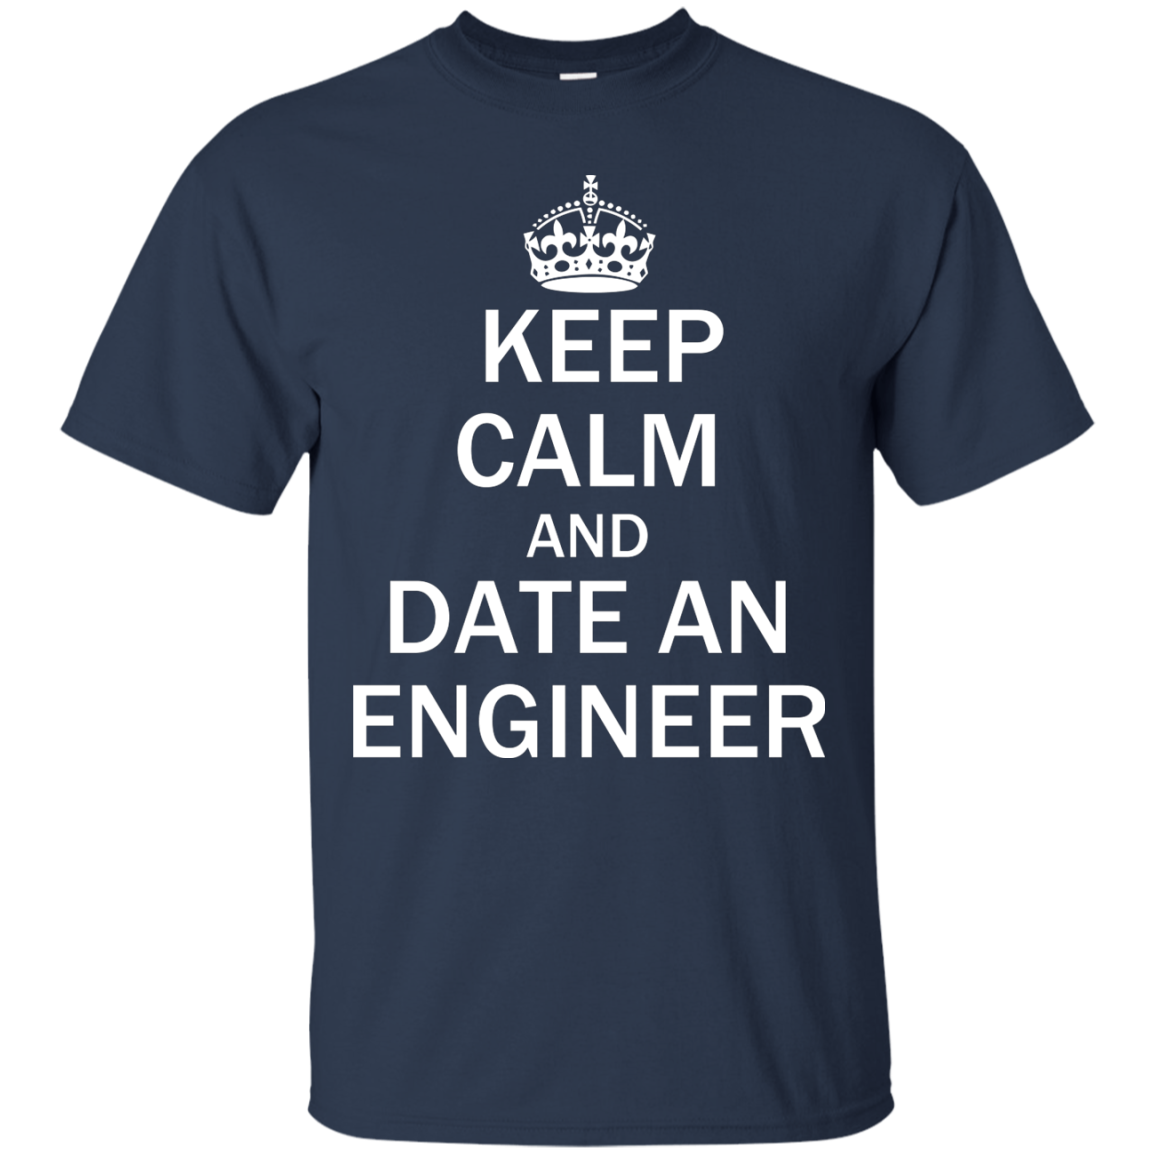 Mantenga la calma y salga con un ingeniero